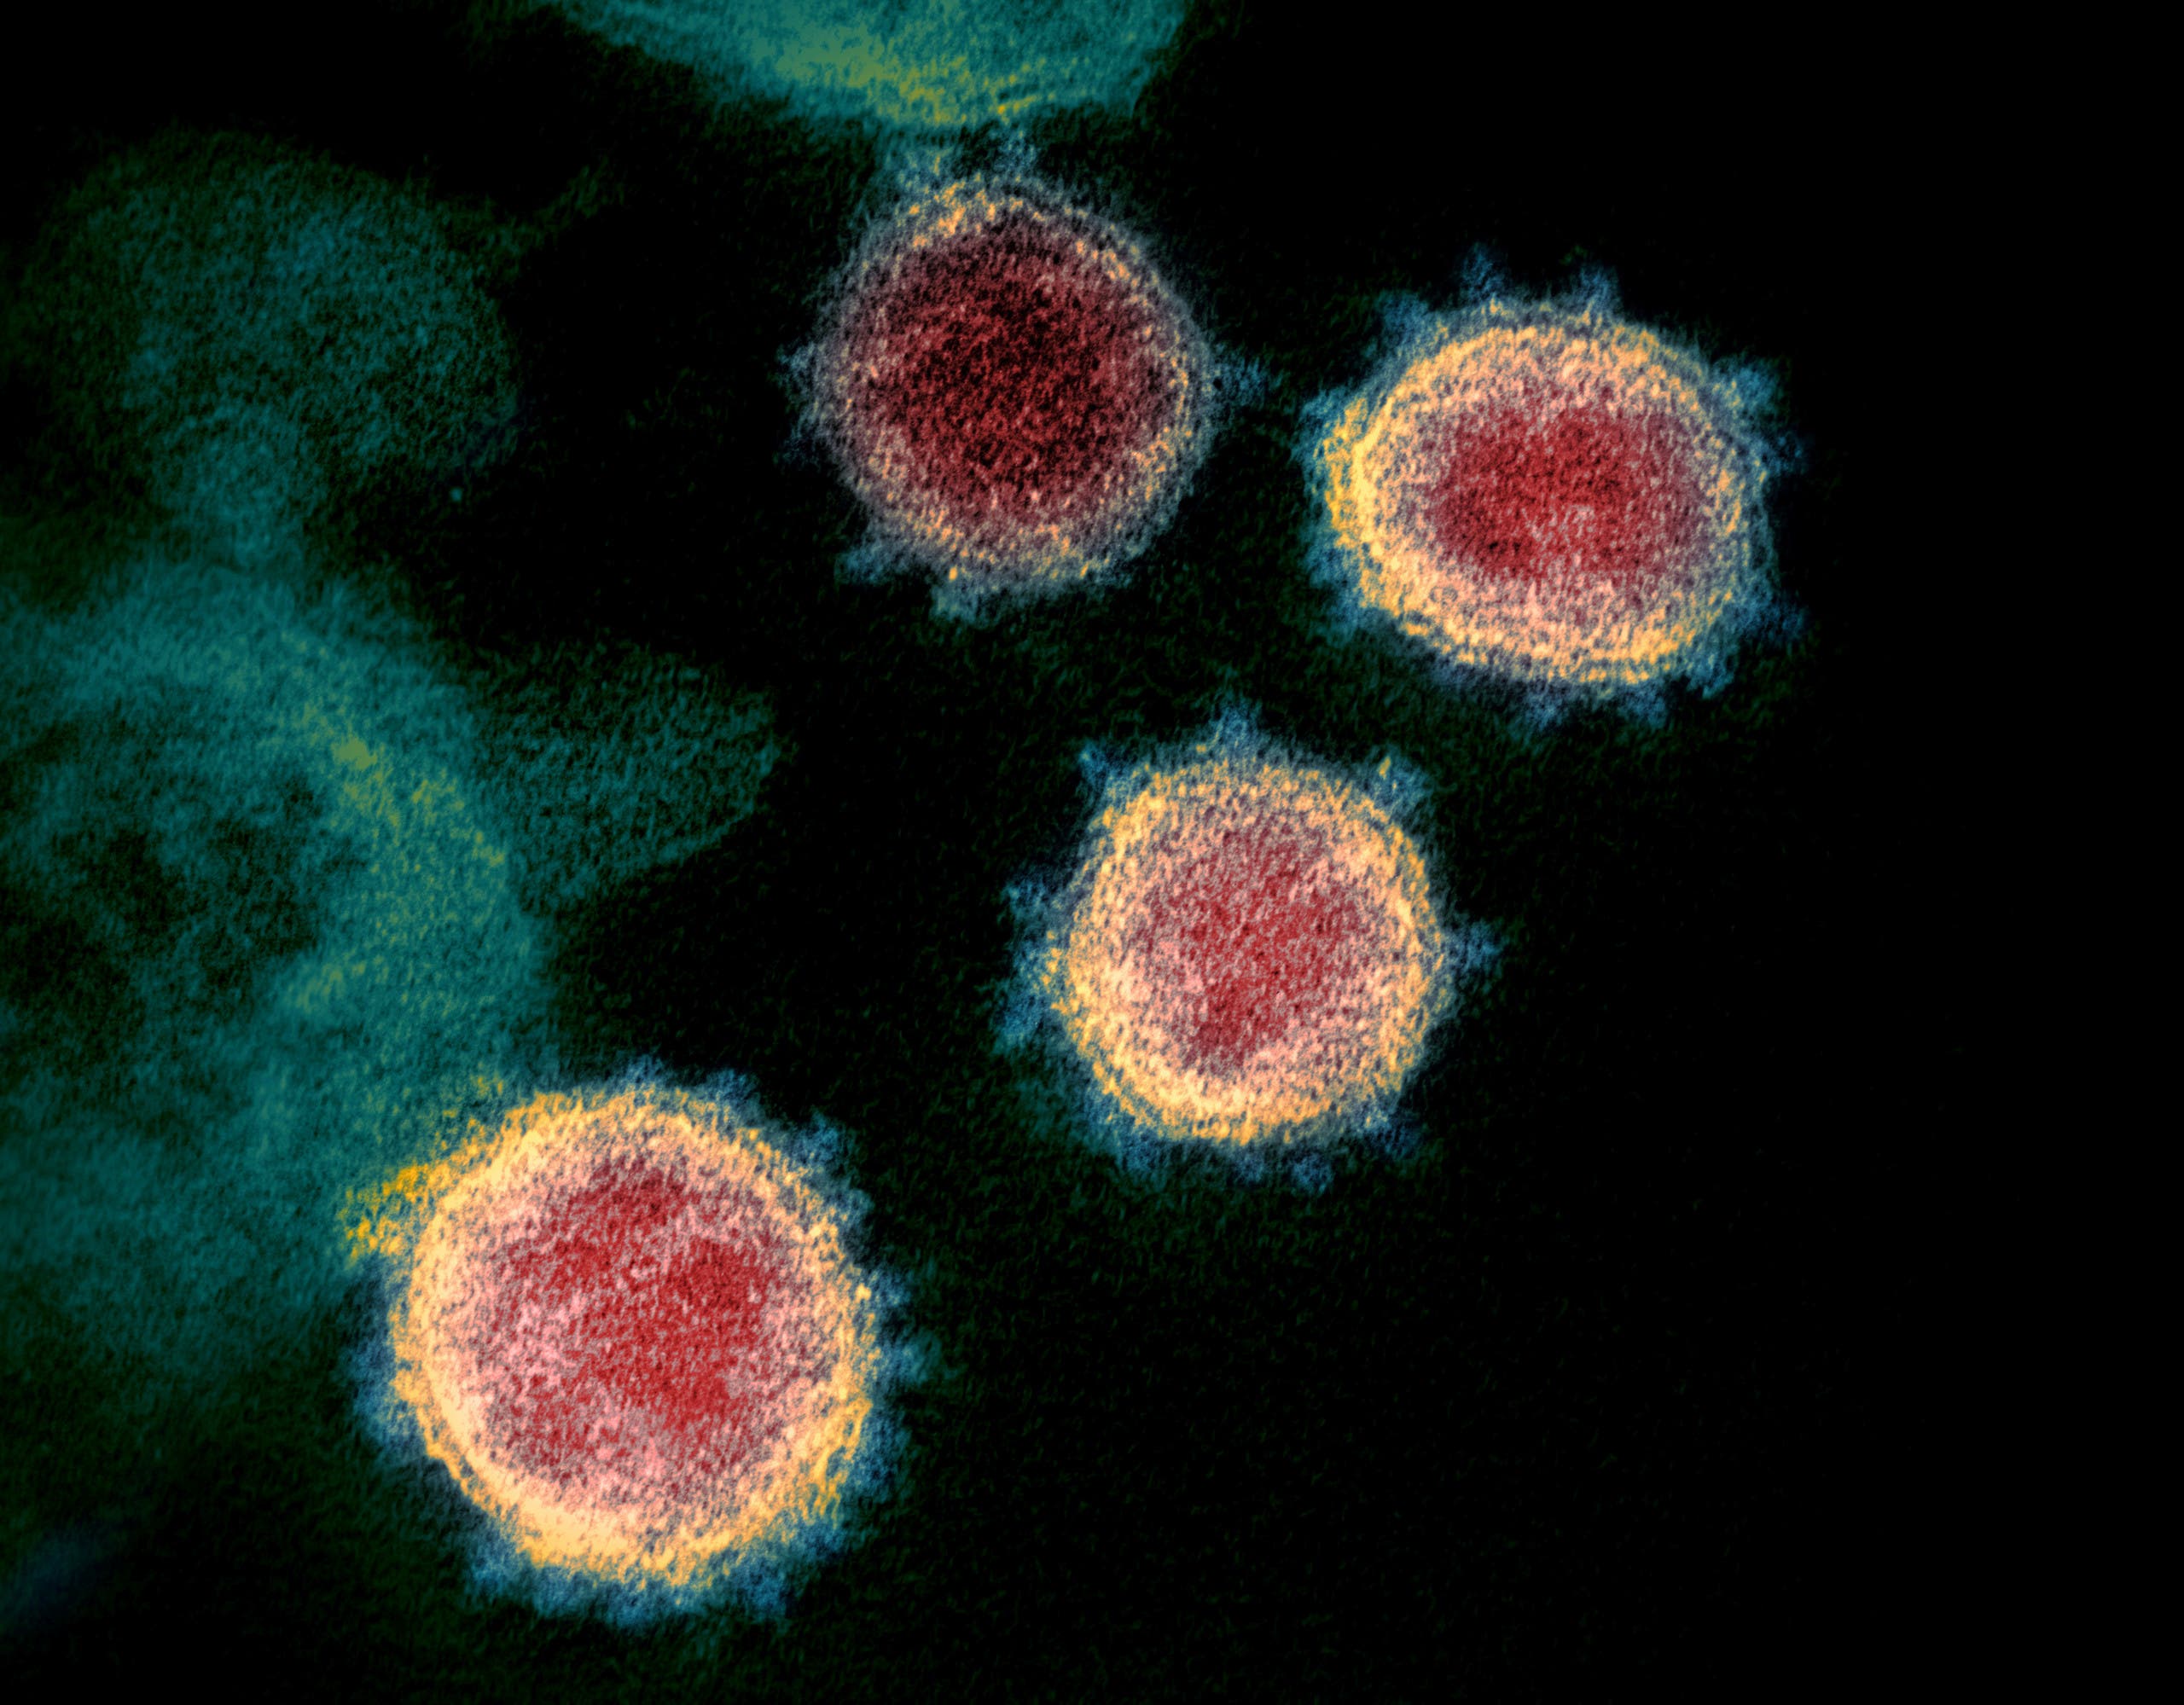 خلايا فيروس كورونا المستجد